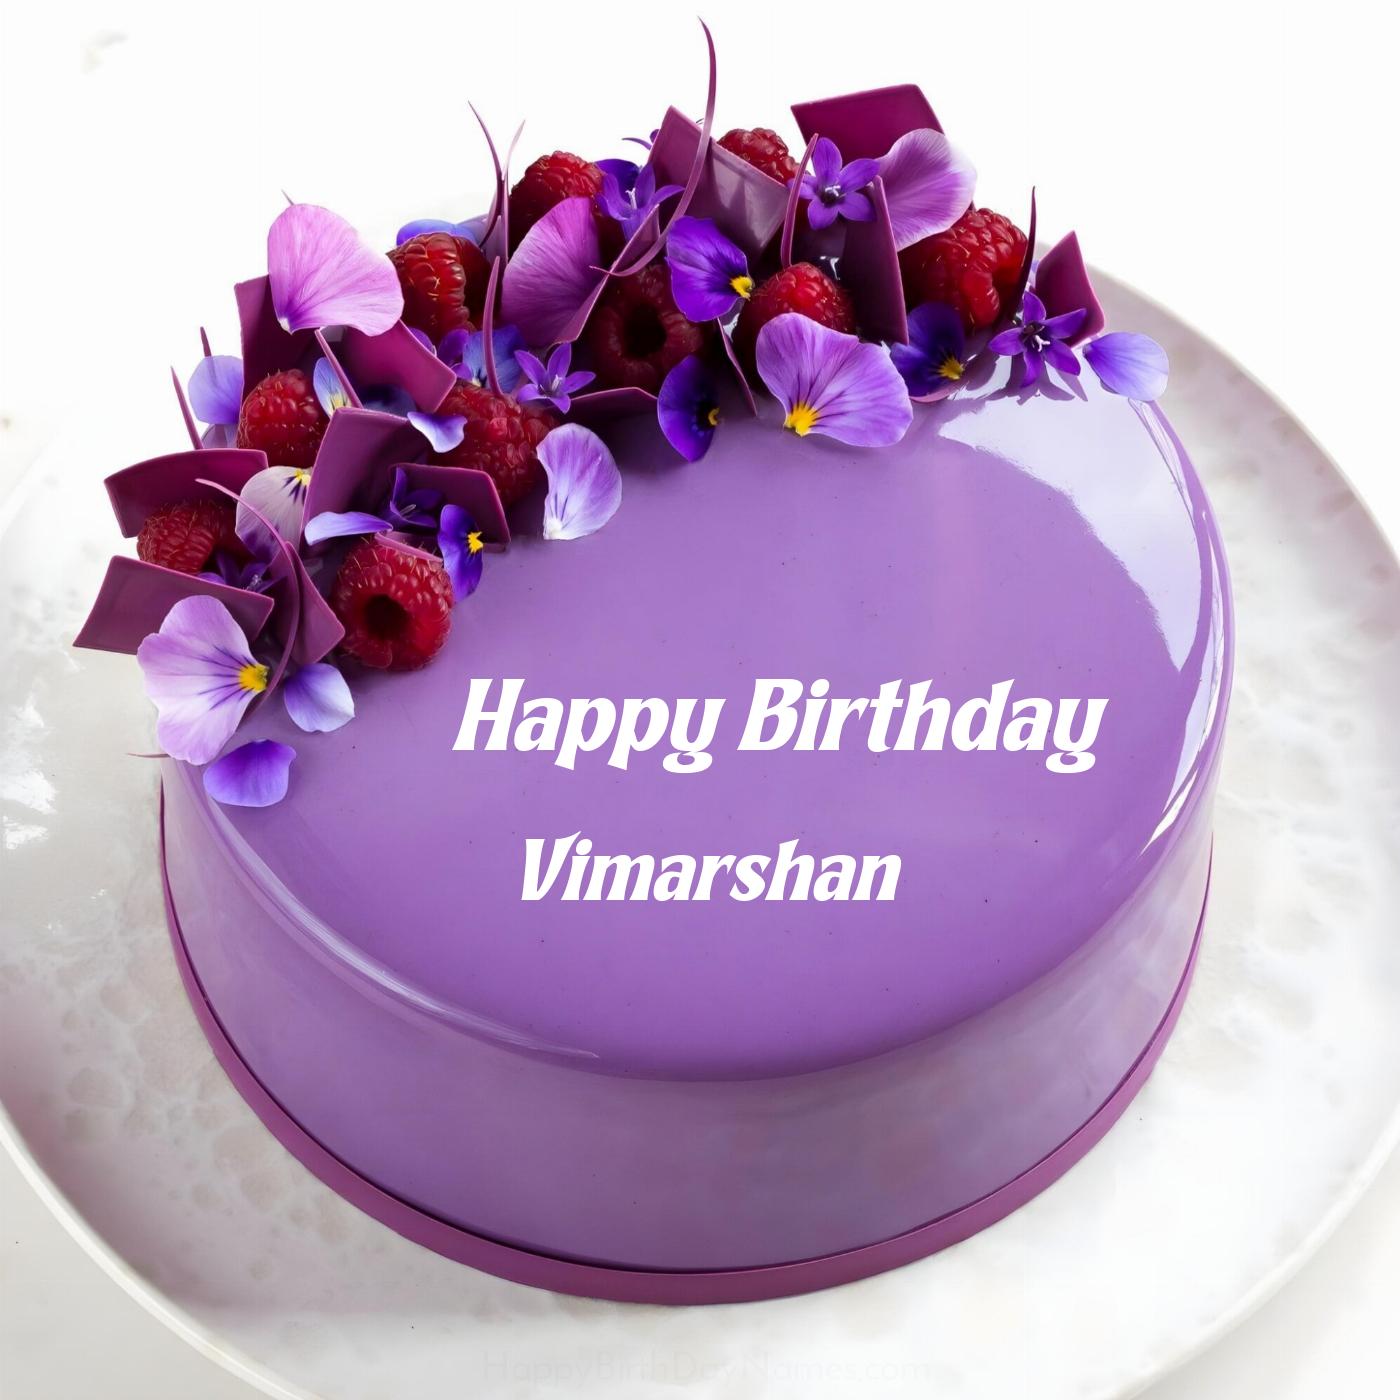 Happy Birthday Vimarshan Violet Raspberry Cake